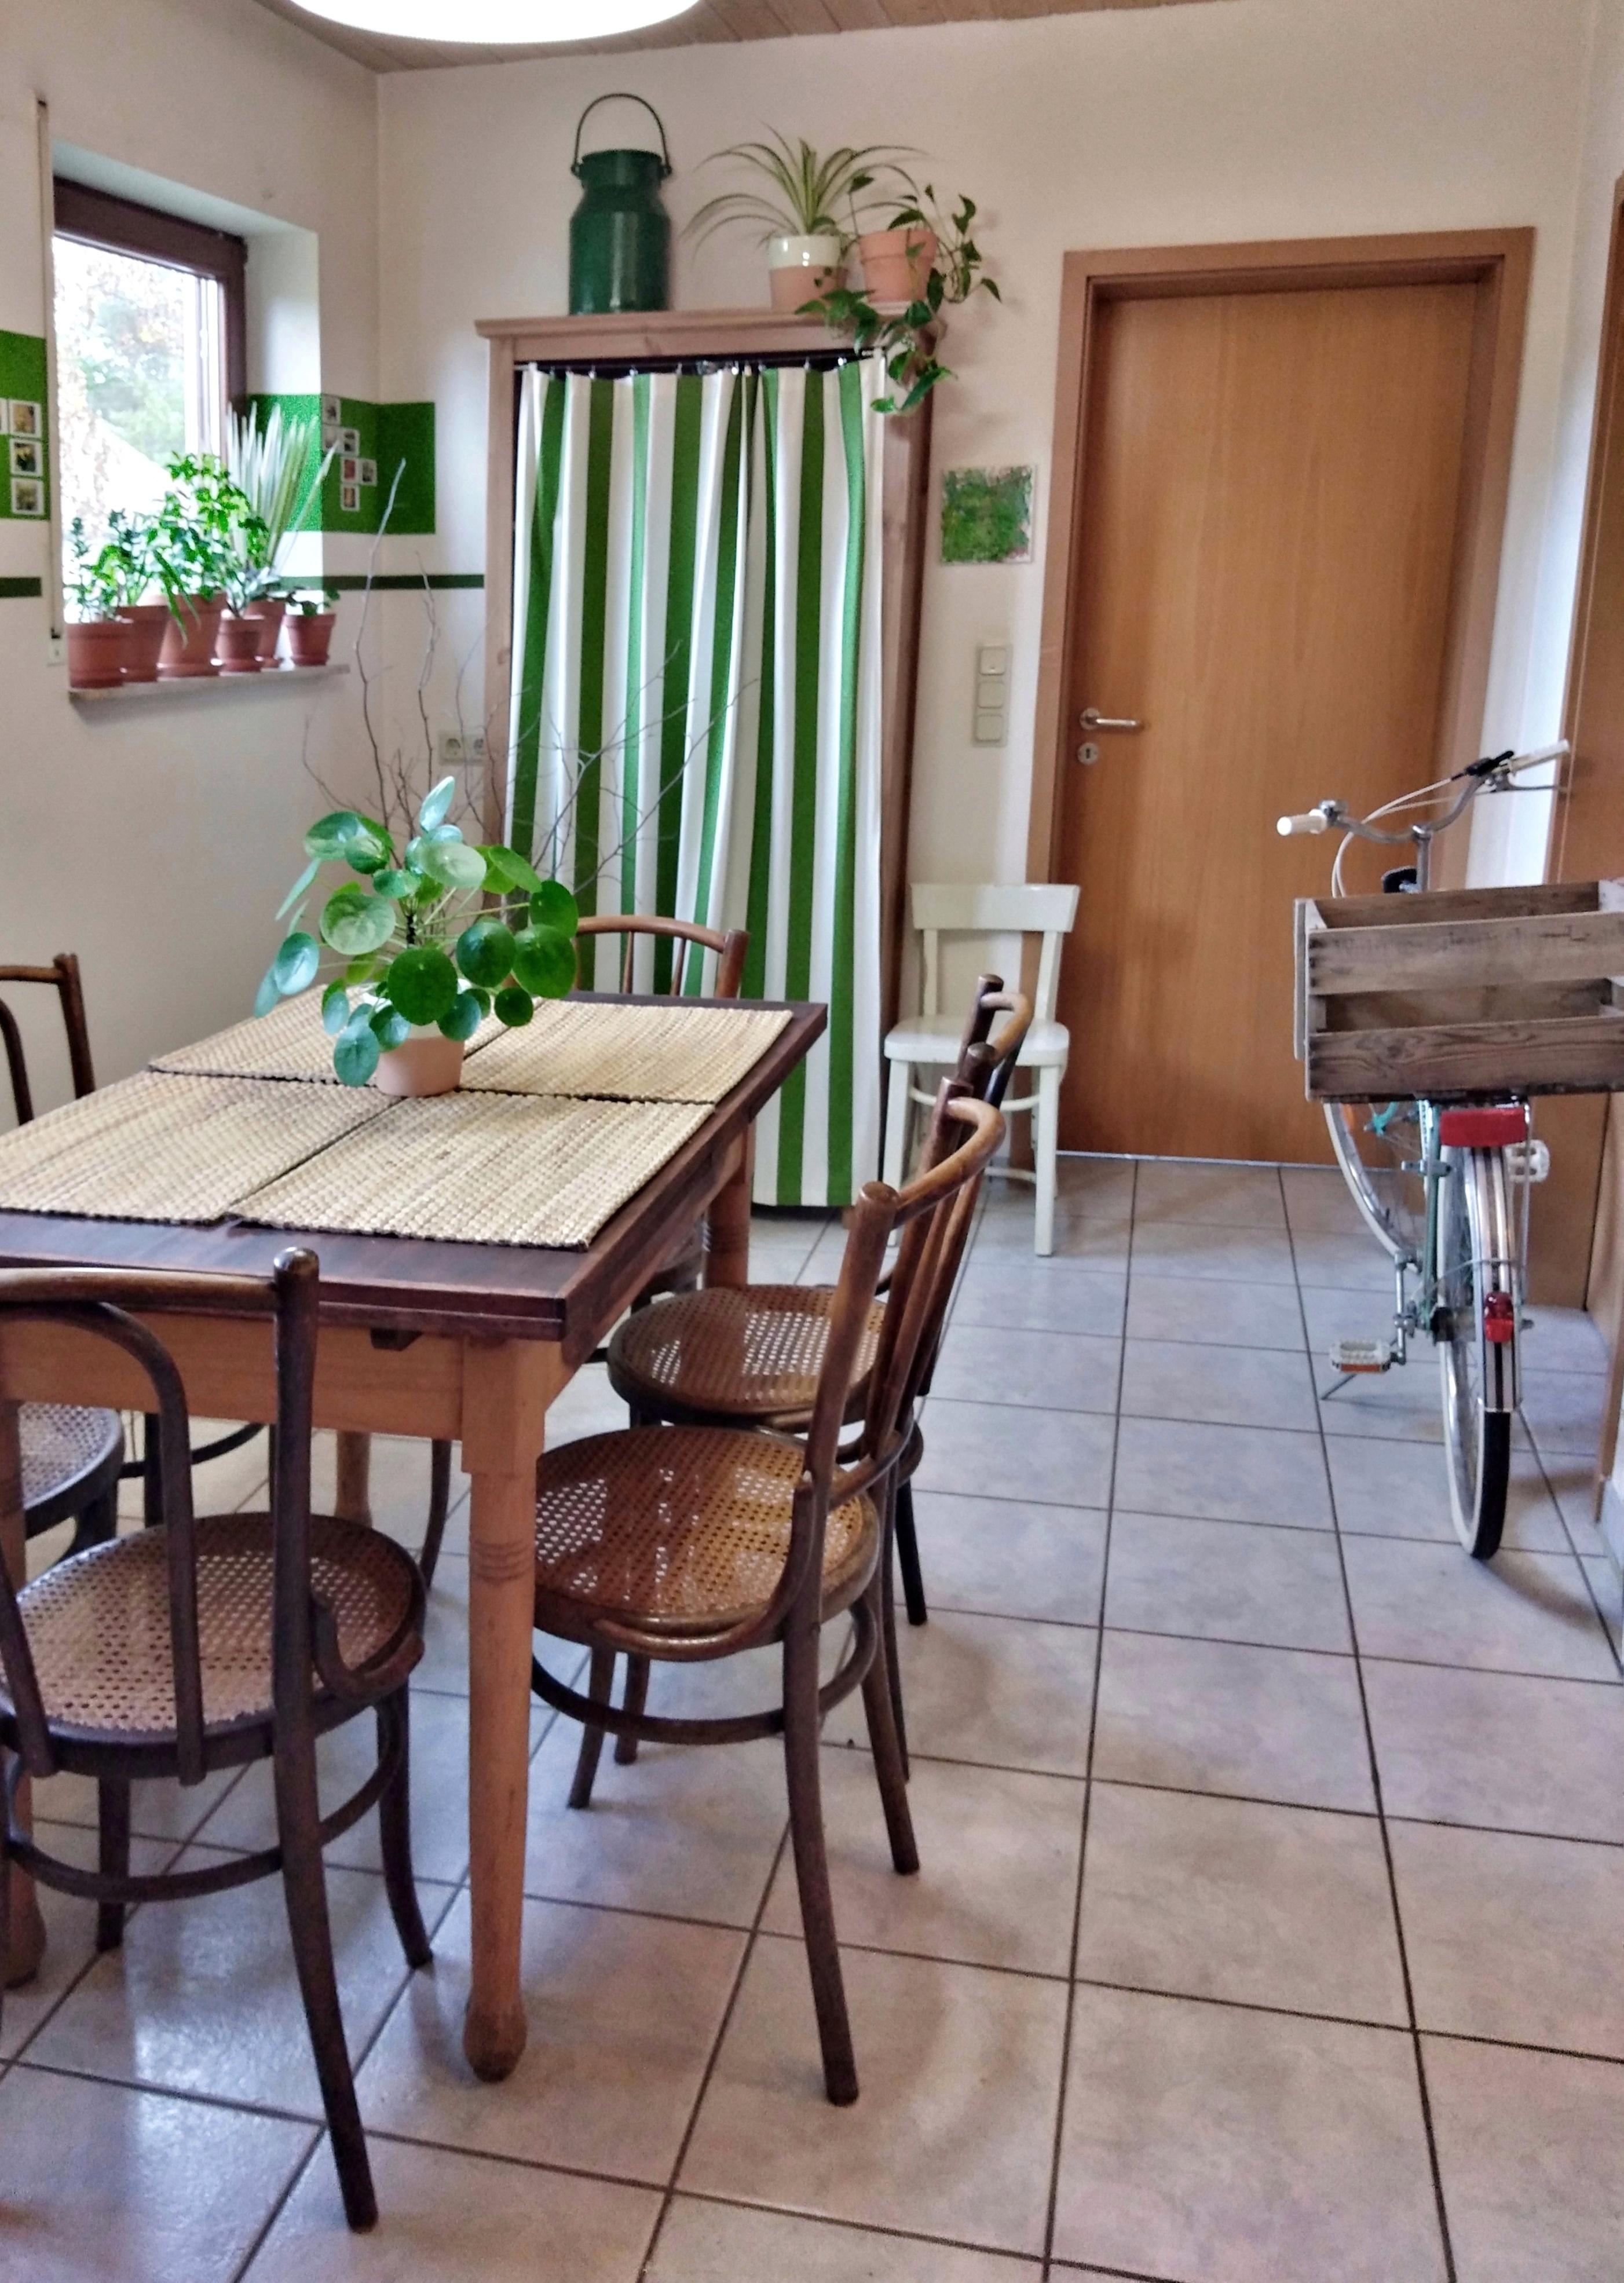 Meine kleine #Wohnküche inkl. #vintage Fahrrad. #küche #kaffeehausstuhl